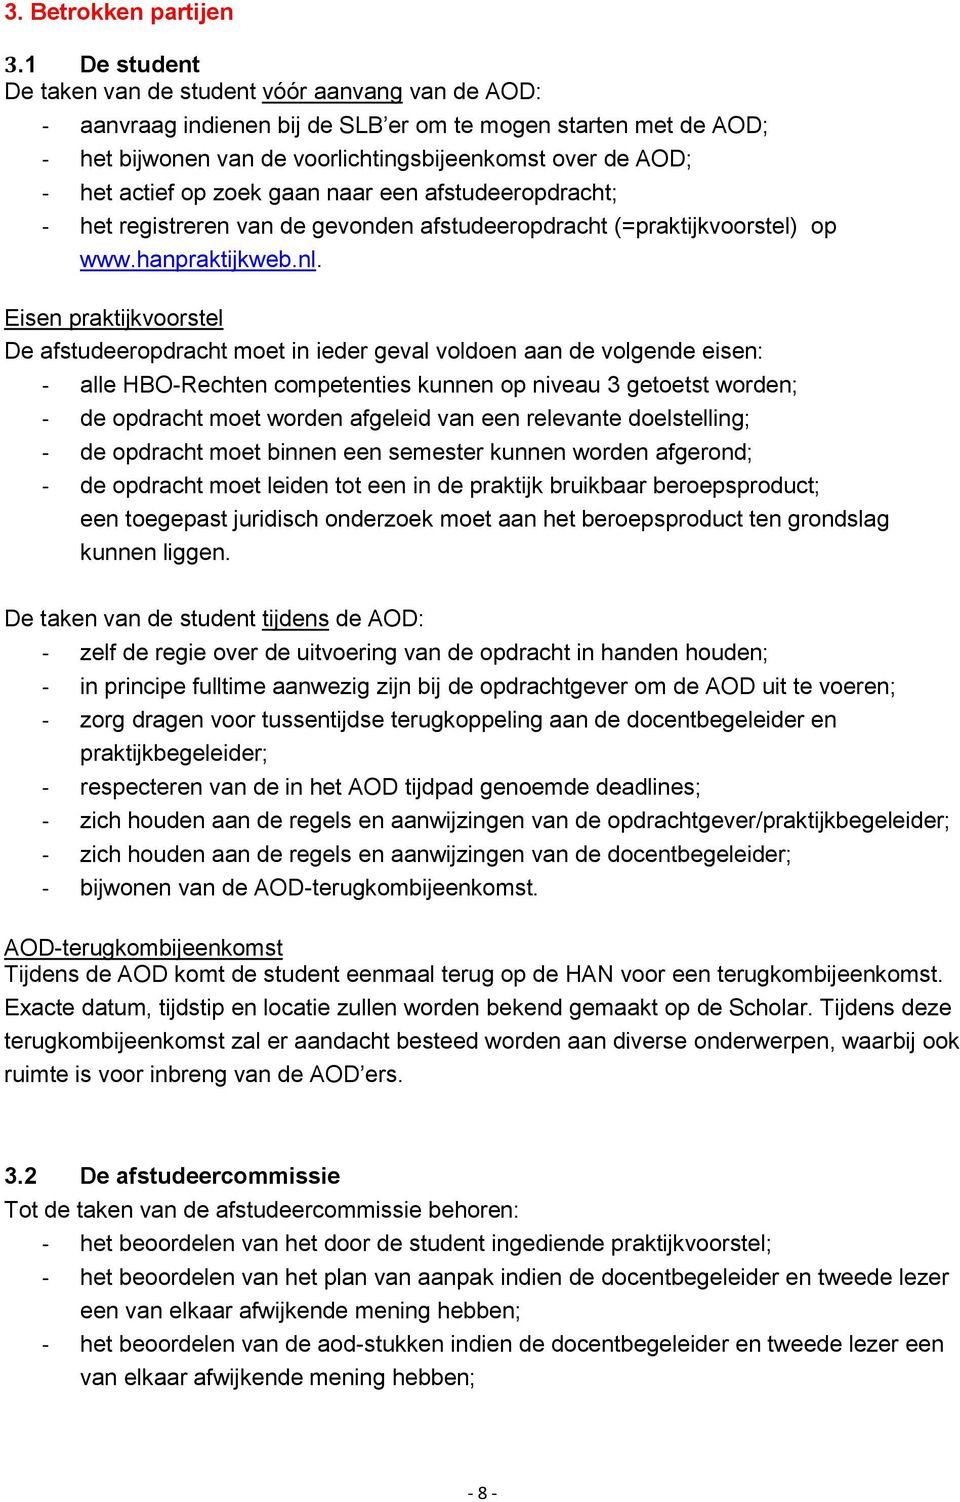 actief op zoek gaan naar een afstudeeropdracht; - het registreren van de gevonden afstudeeropdracht (=praktijkvoorstel) op www.hanpraktijkweb.nl.